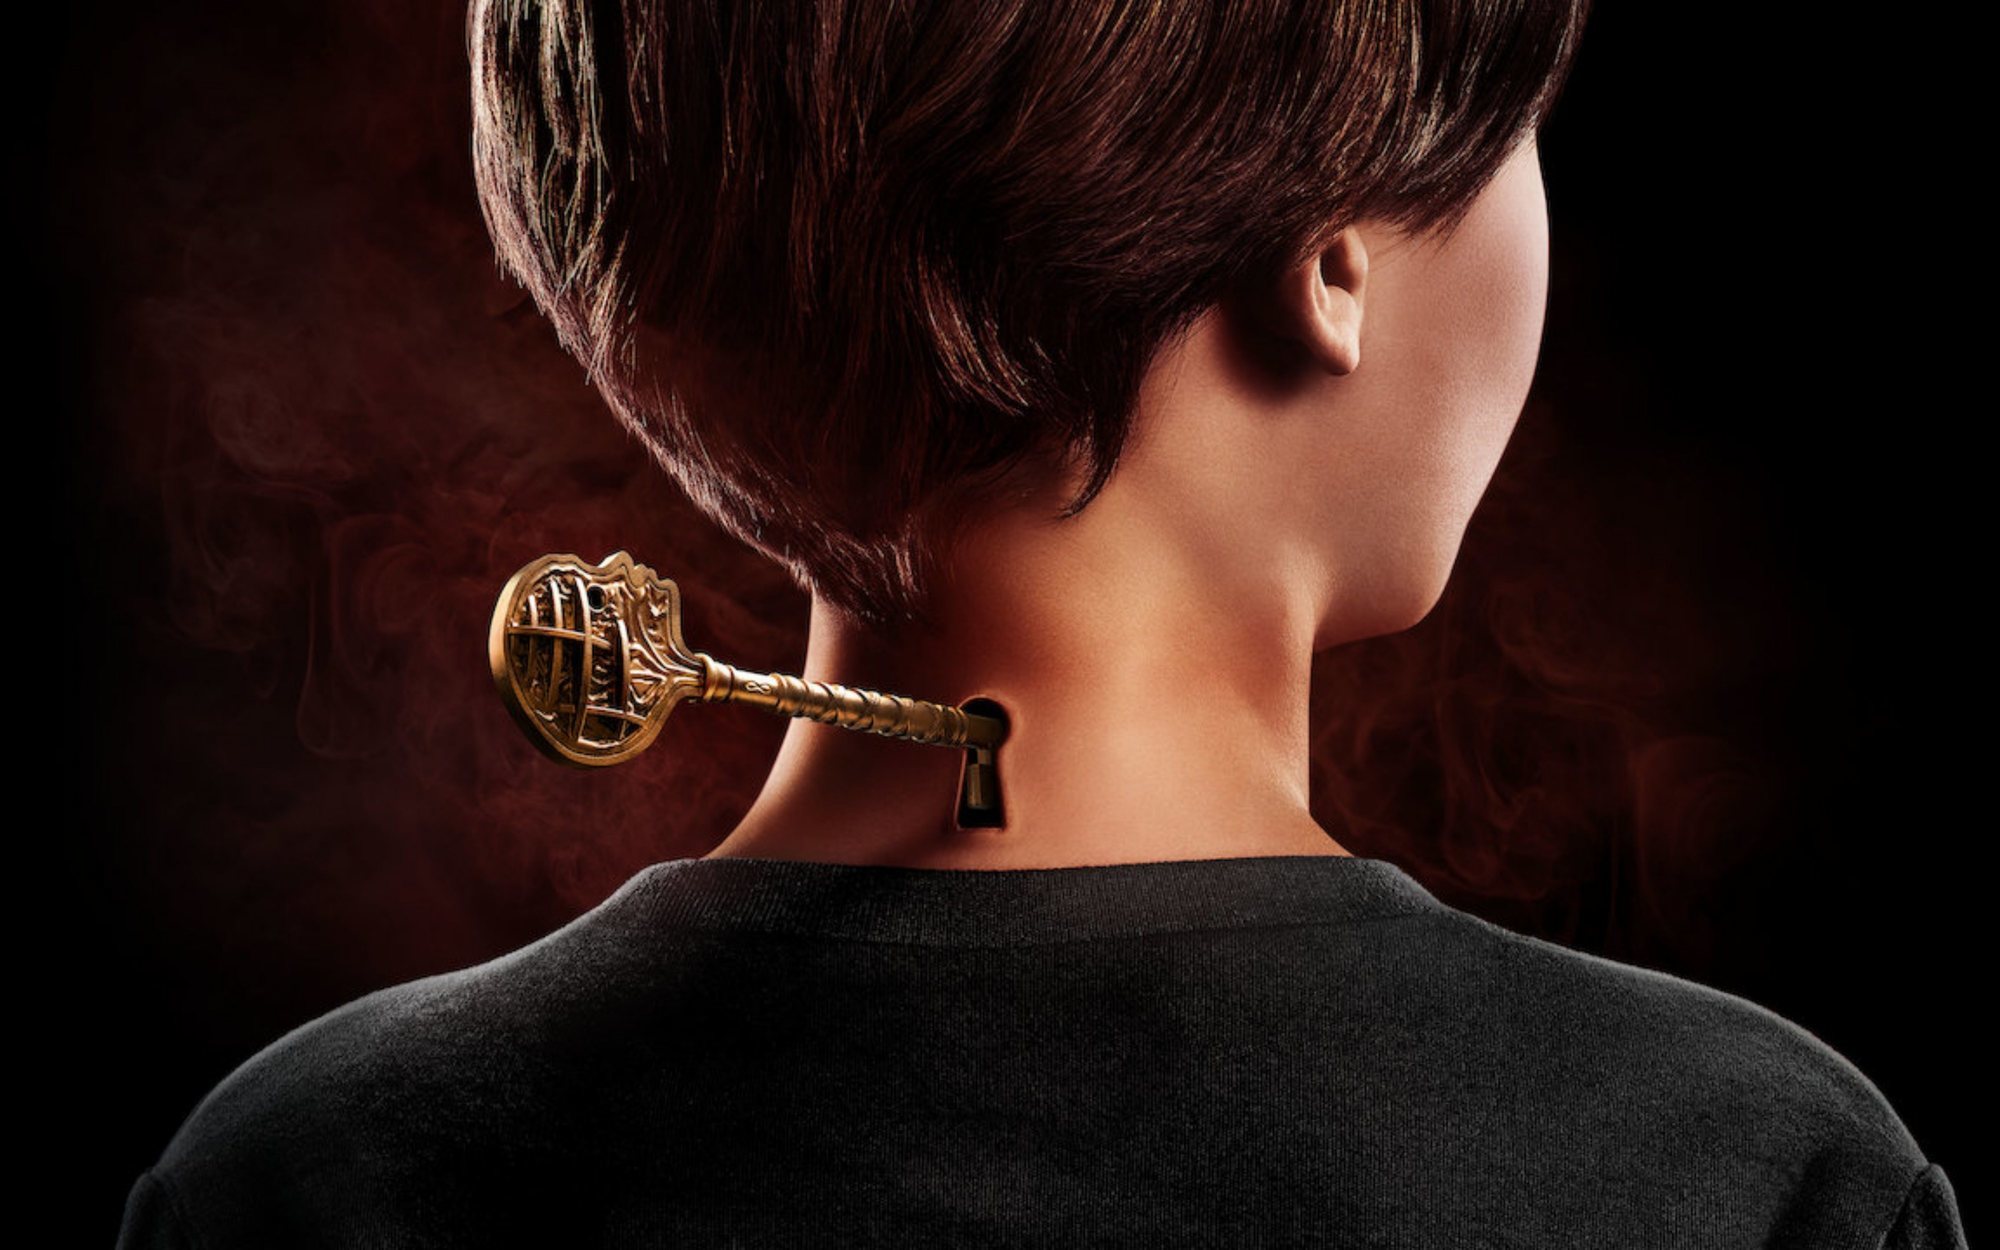 Netflix renueva 'Locke & Key' por una tercera temporada